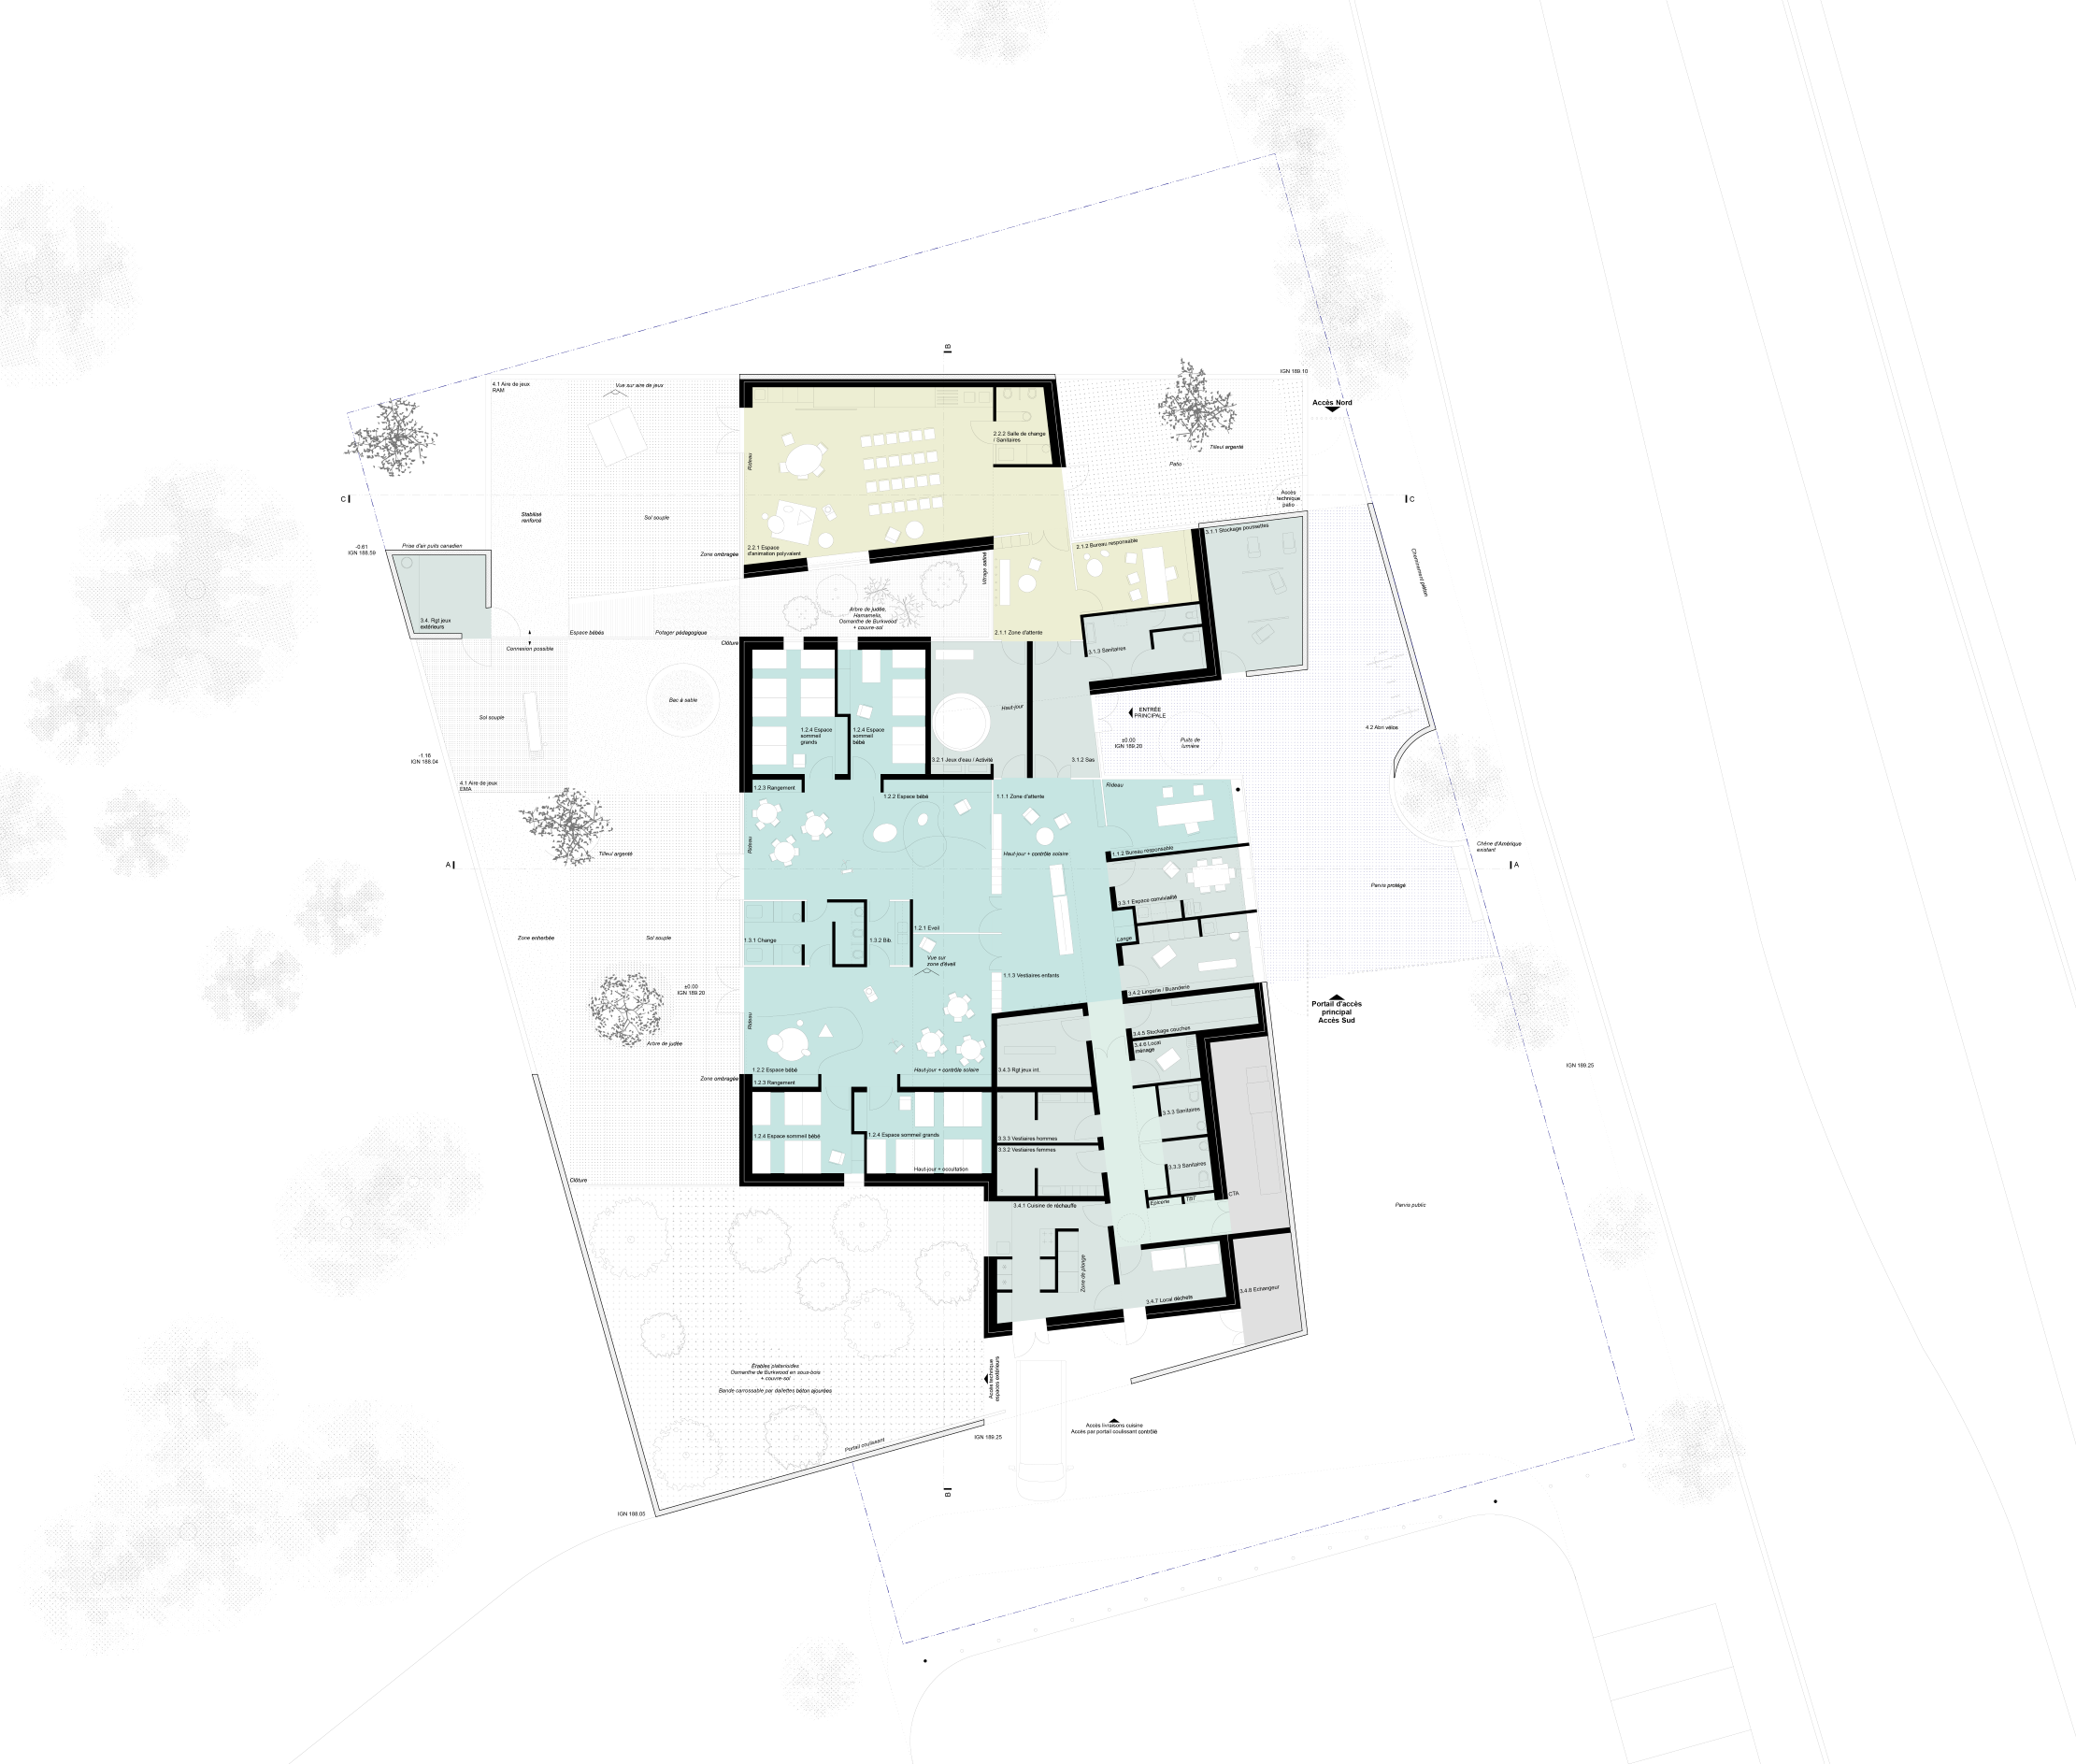 Plan de RDC filaire avec annotations des différents espaces